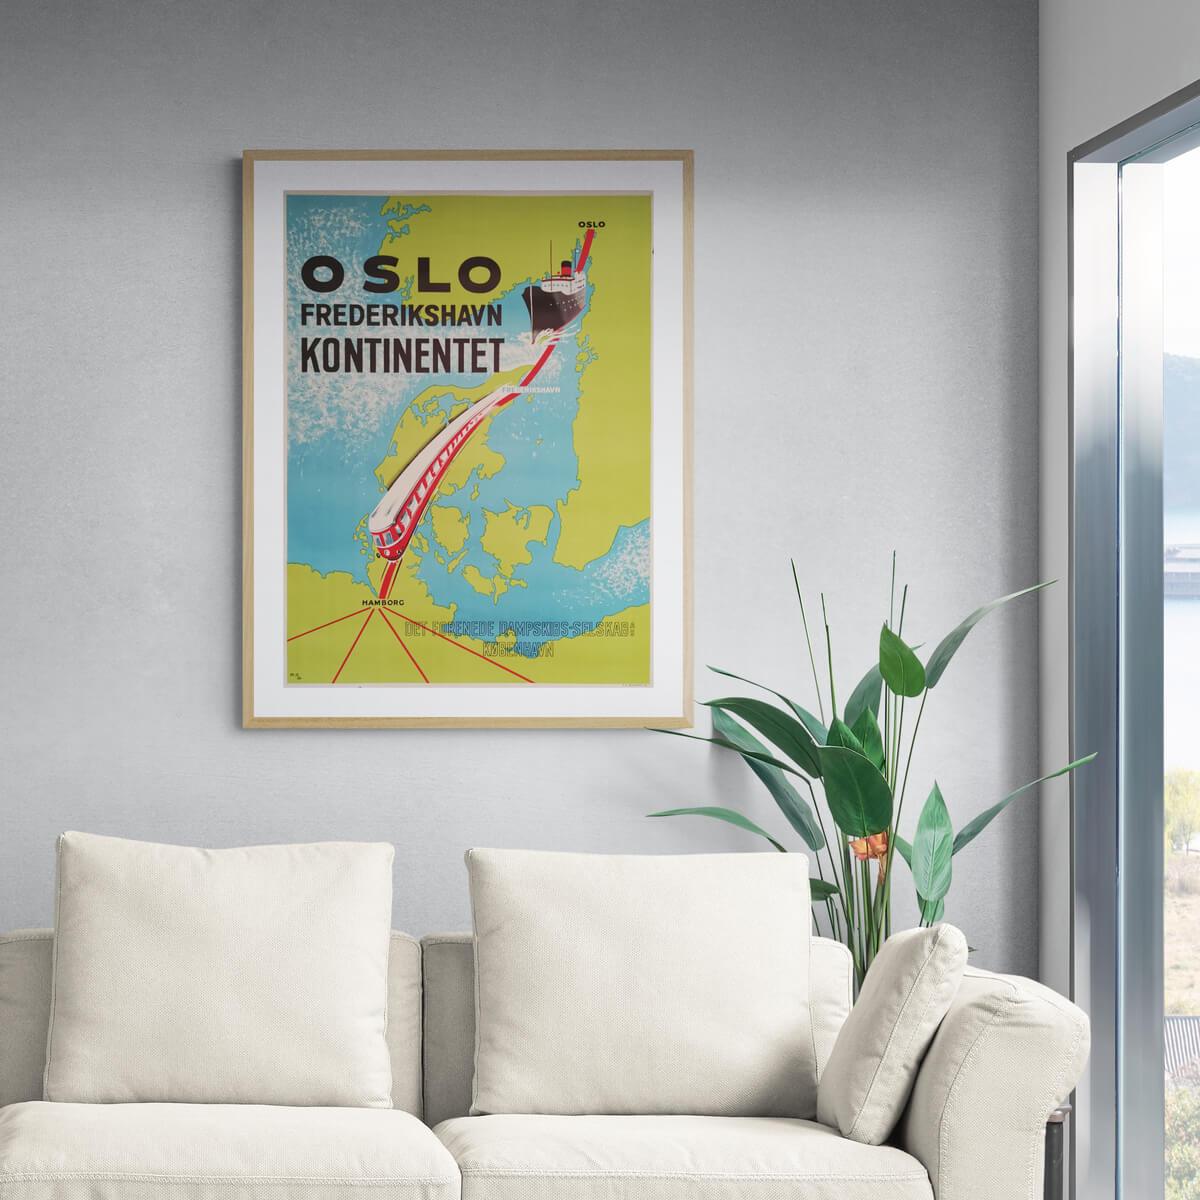 oslo-frederikshavn-kontinentet-plakat-poster